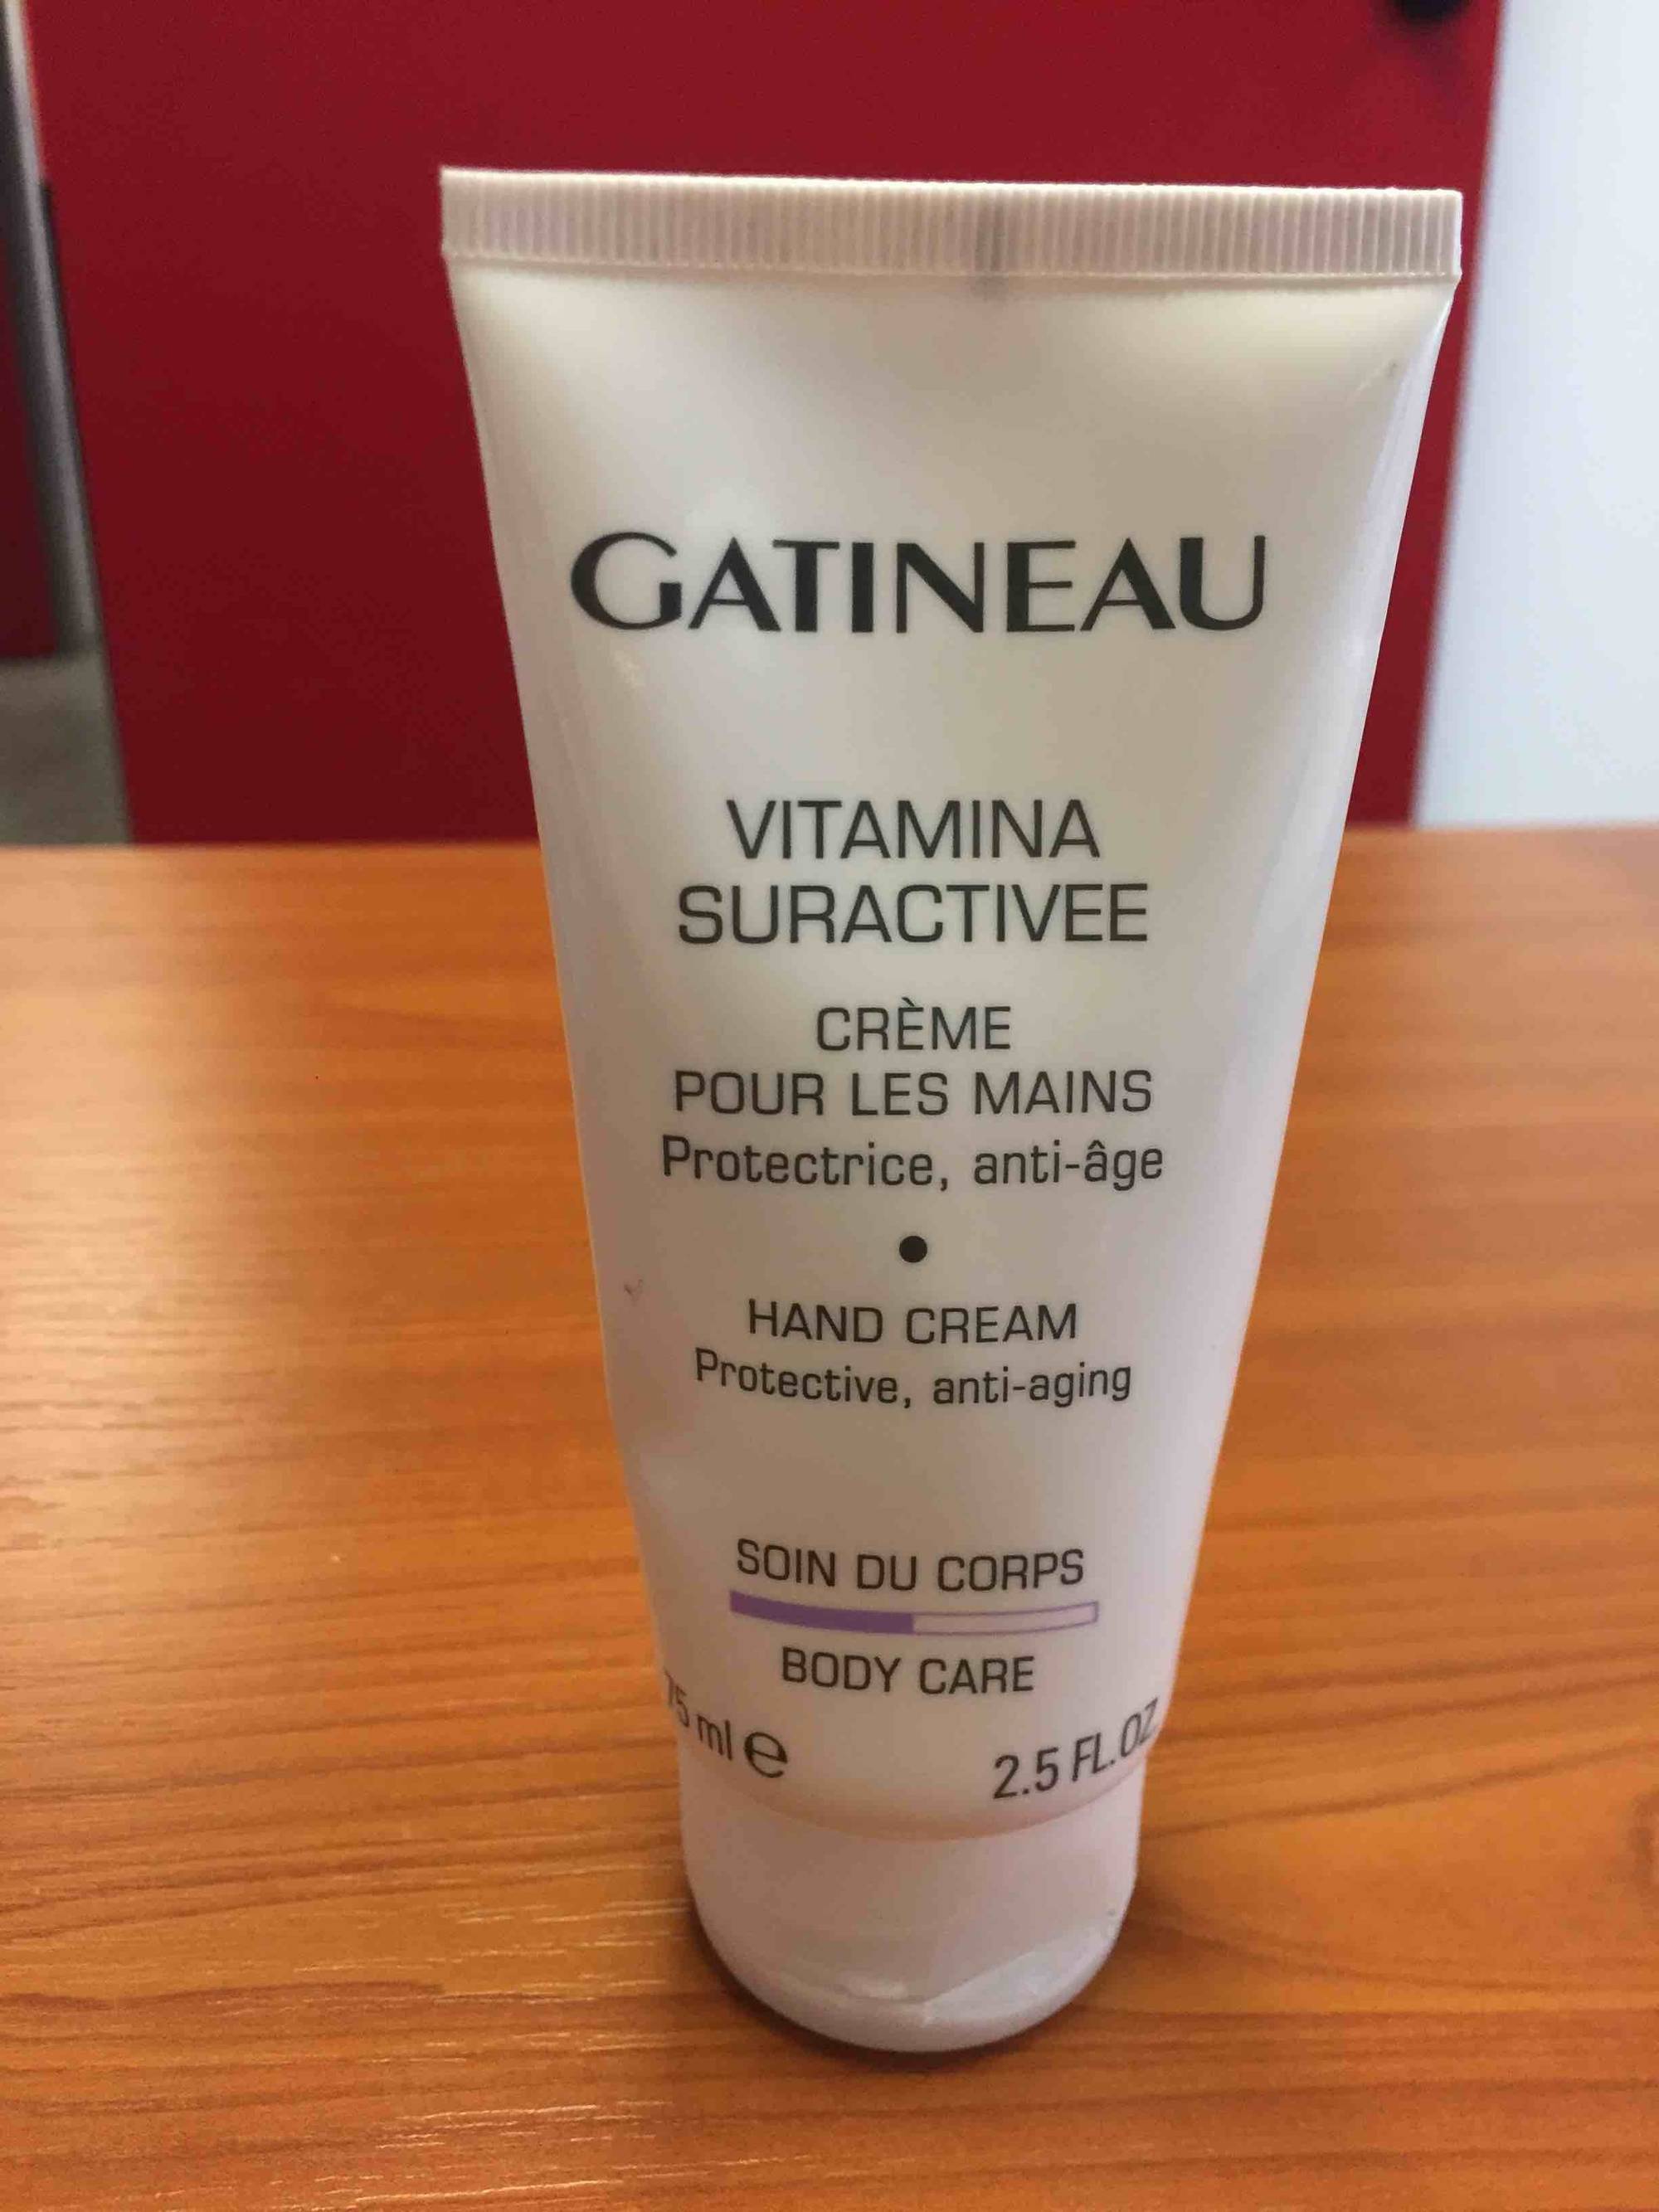 GATINEAU - Vitamina suractivee - Crème pour les mains